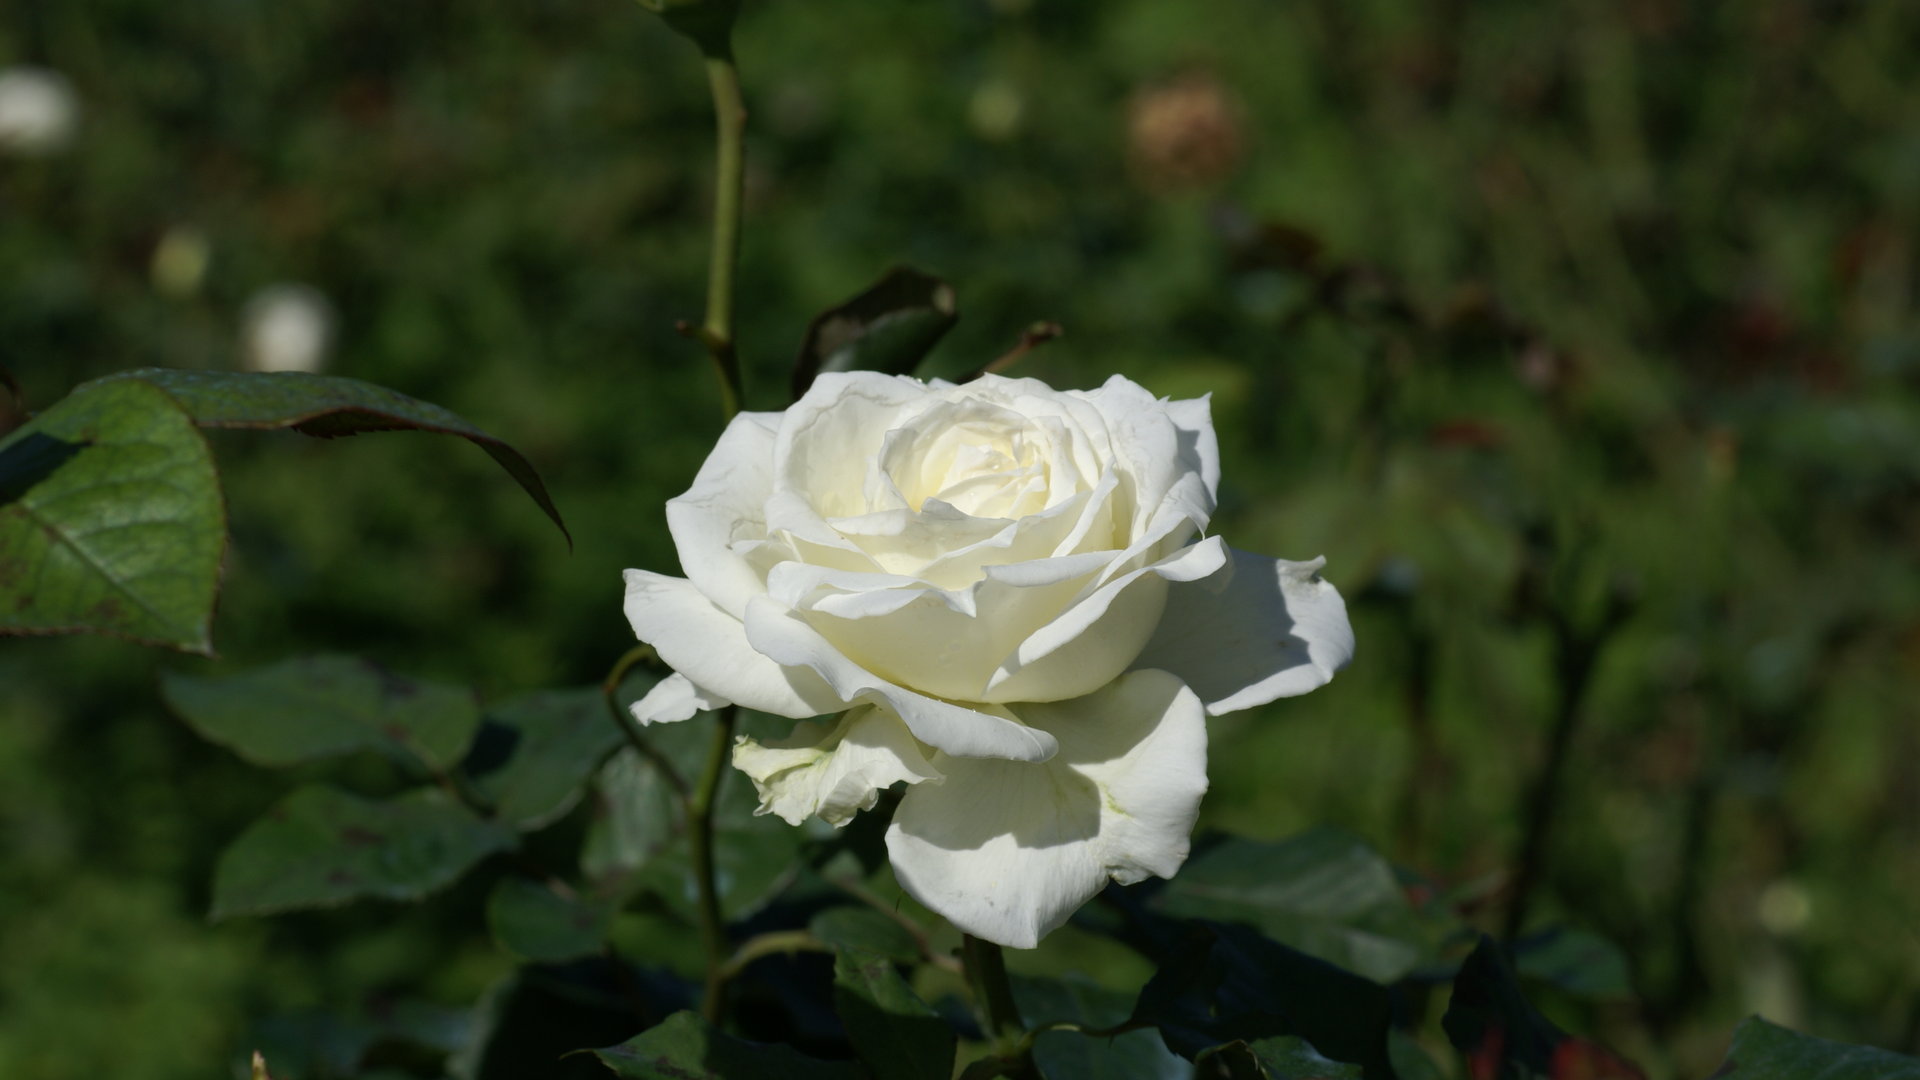 White Rose Garden Wallpaper